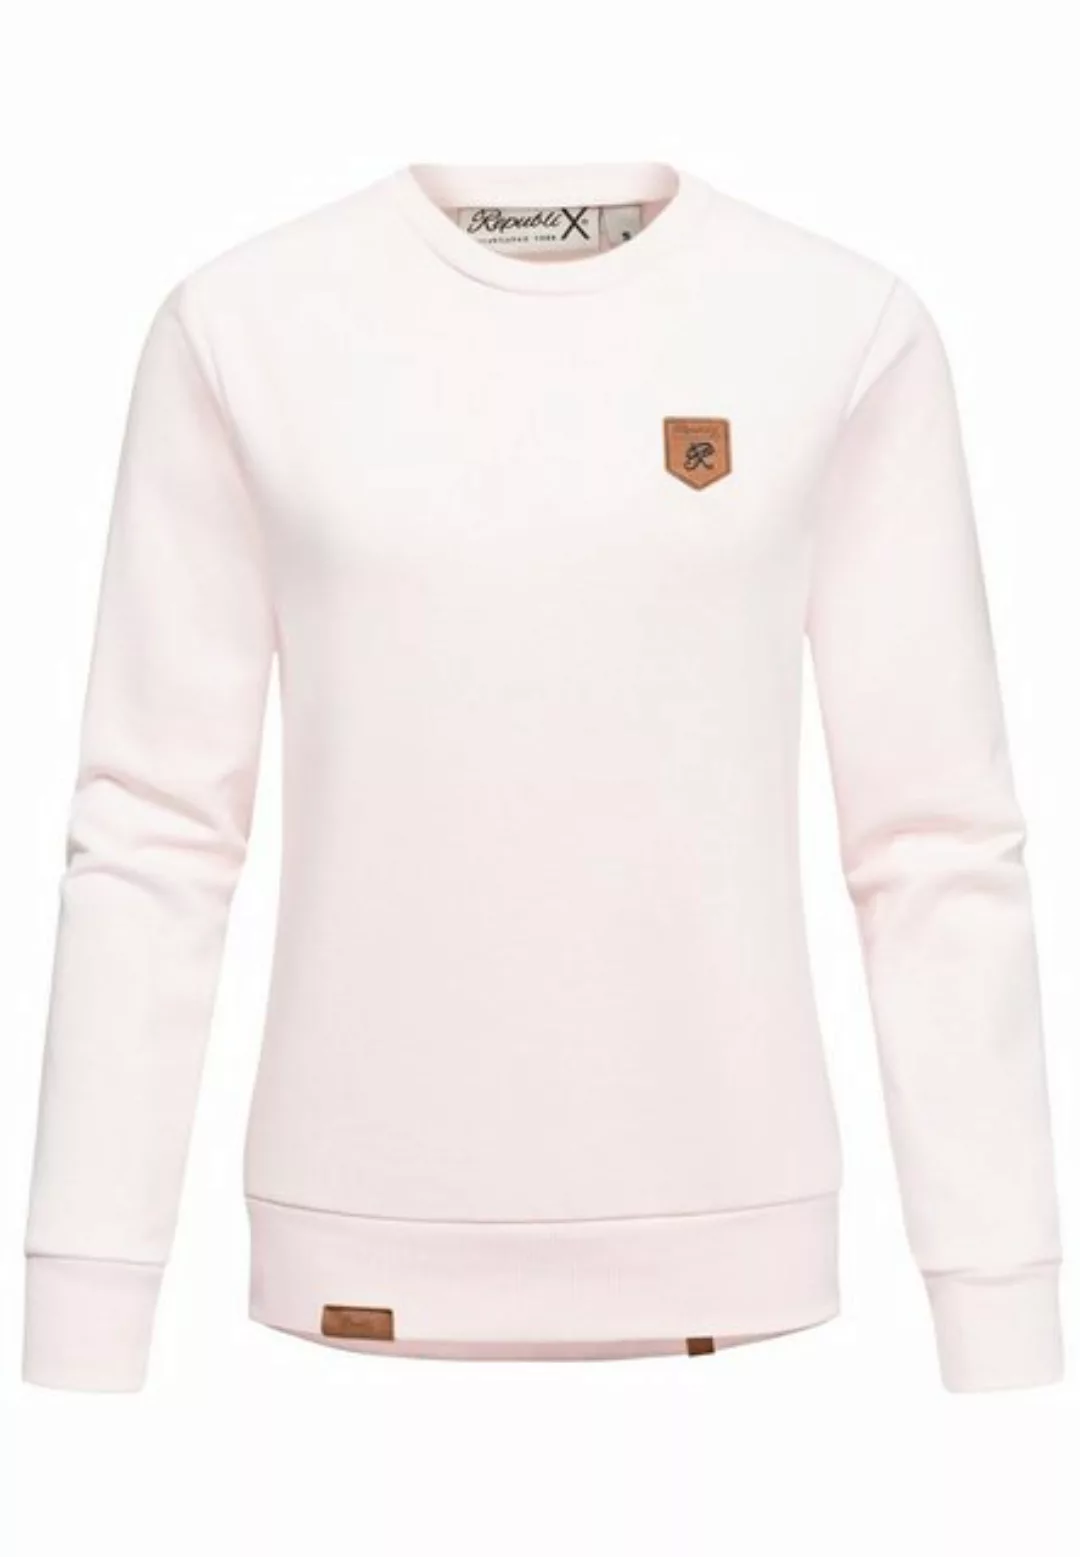 REPUBLIX Sweatshirt CASSY Damen Kapuzenpullover Sweatjacke Pullover Hoodie günstig online kaufen